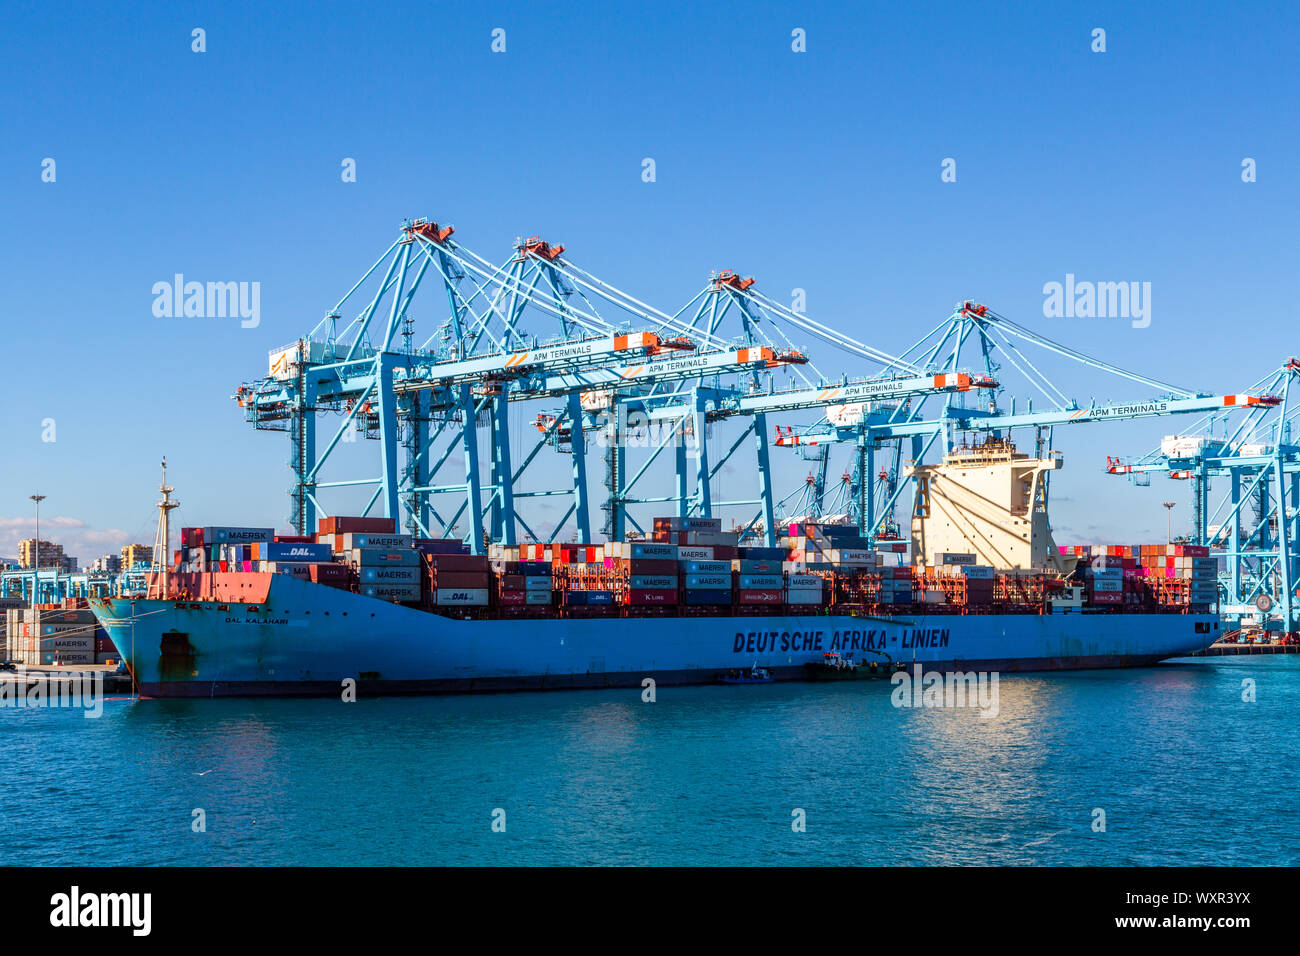 Eine Nahaufnahme Bild eines großen Containerschiff von Kranen mit blauer Himmel in den Hafen von Algeciras angedockt geladen wird, Spanien Stockfoto